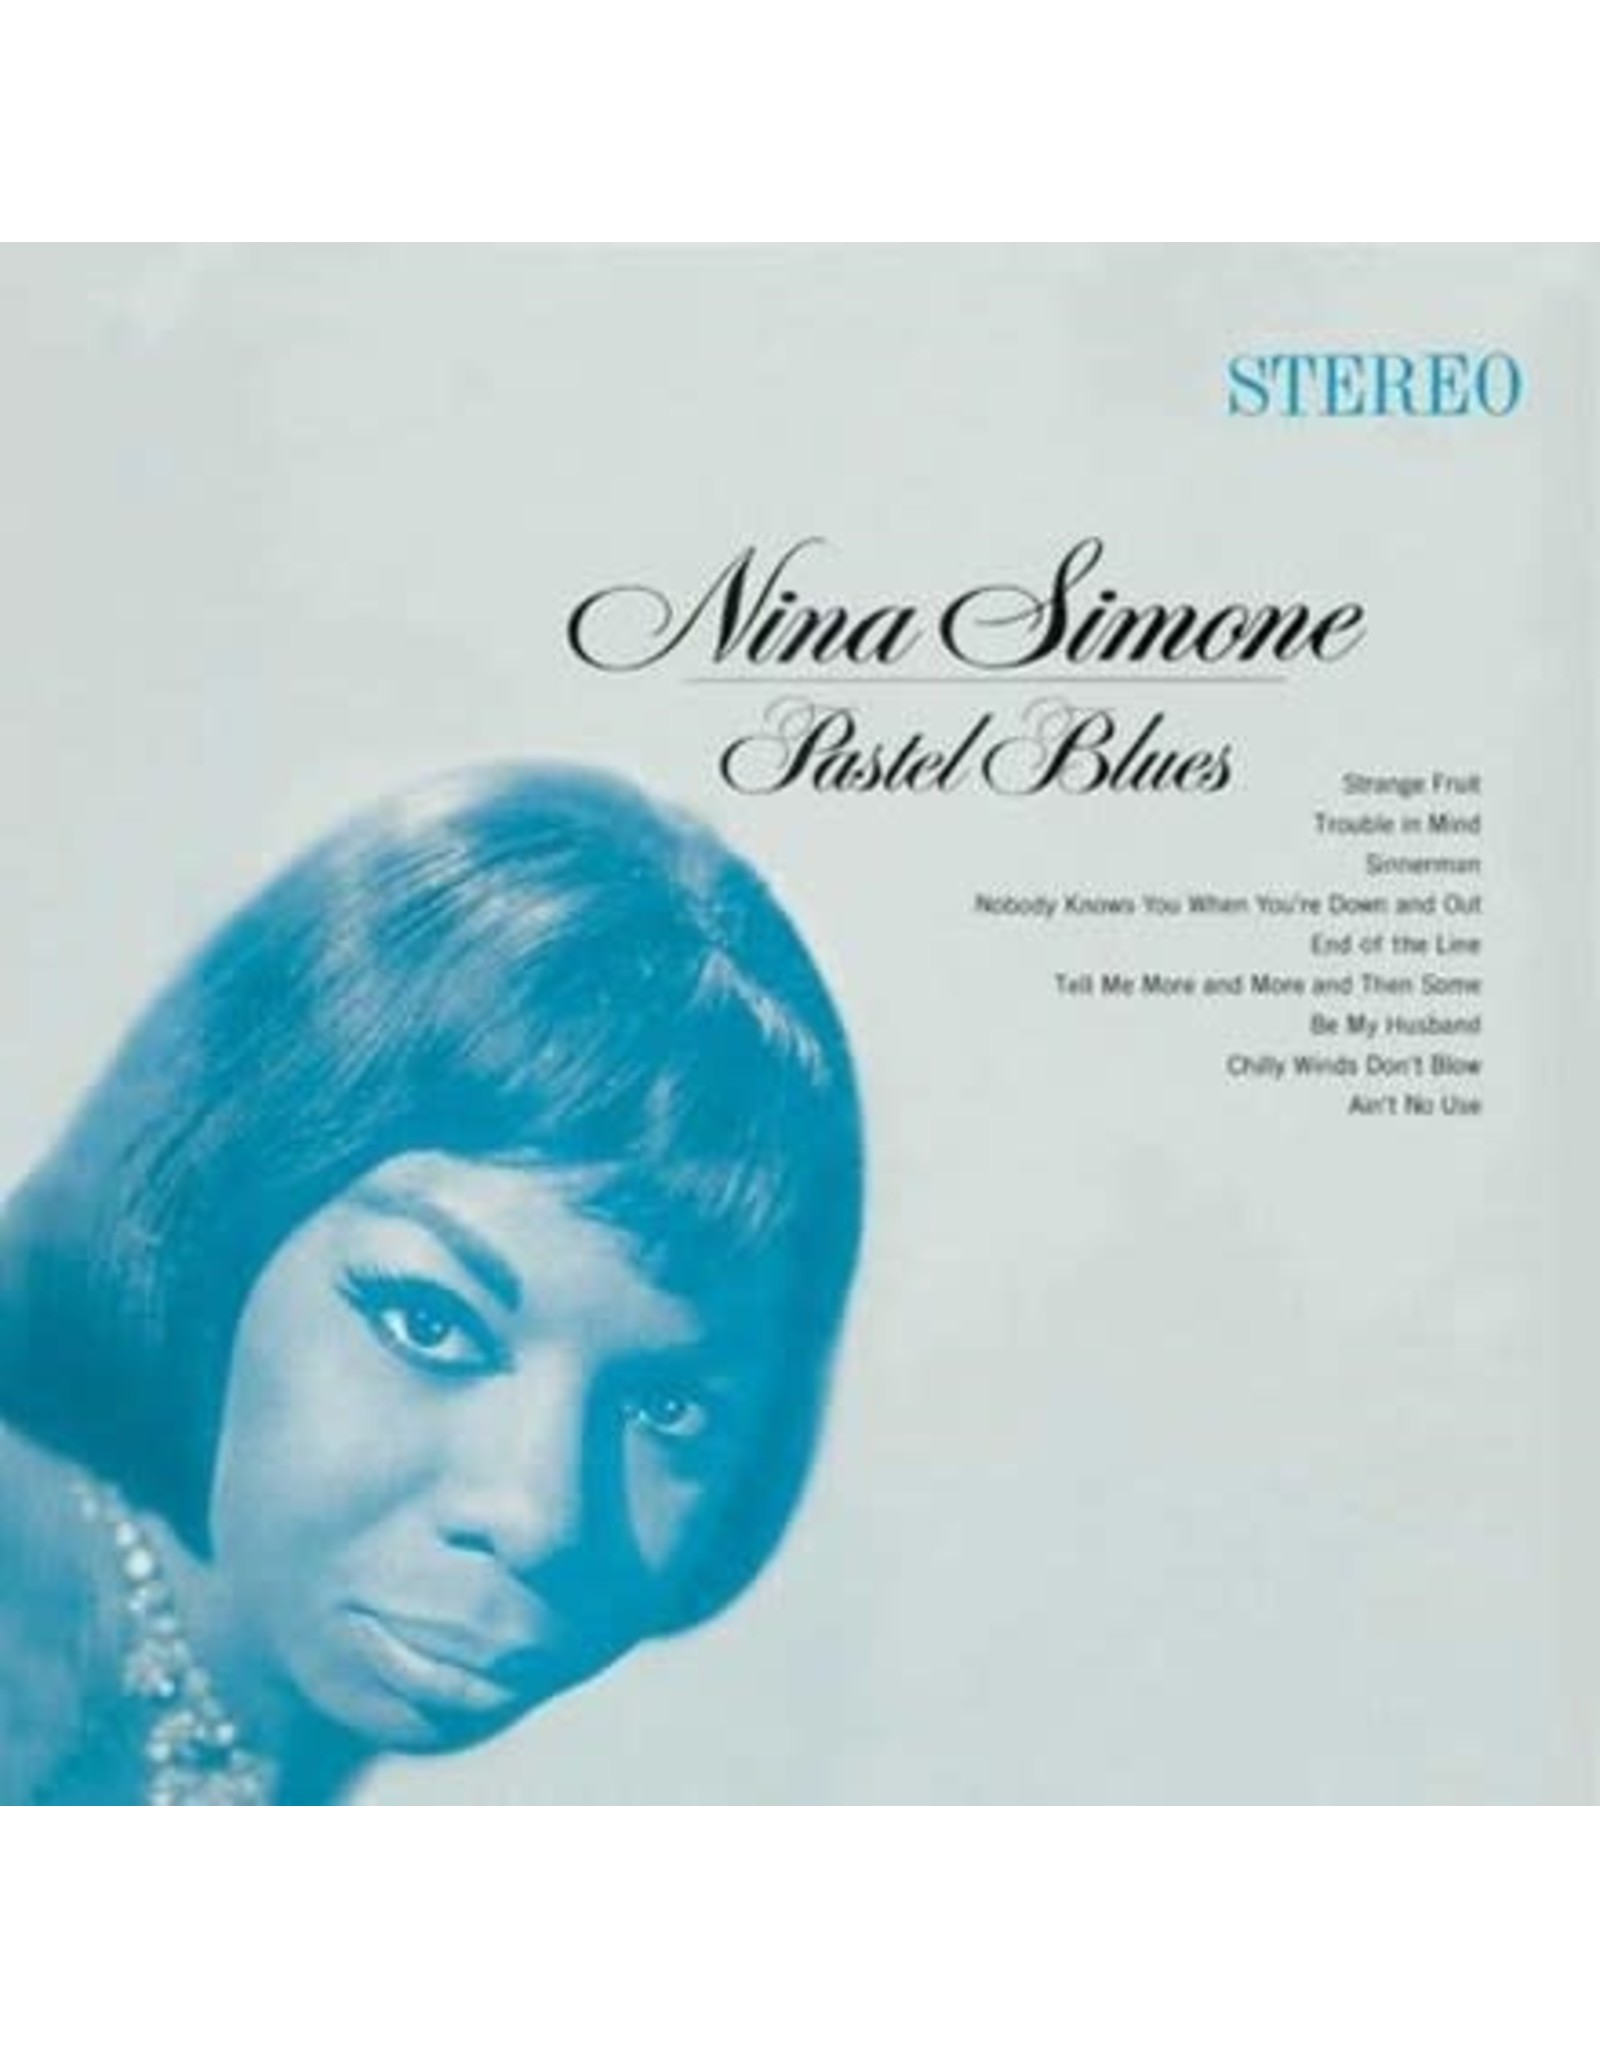 Verve Simone, Nina: Pastel Blues (Verve Acoustic Sounds Series) LP